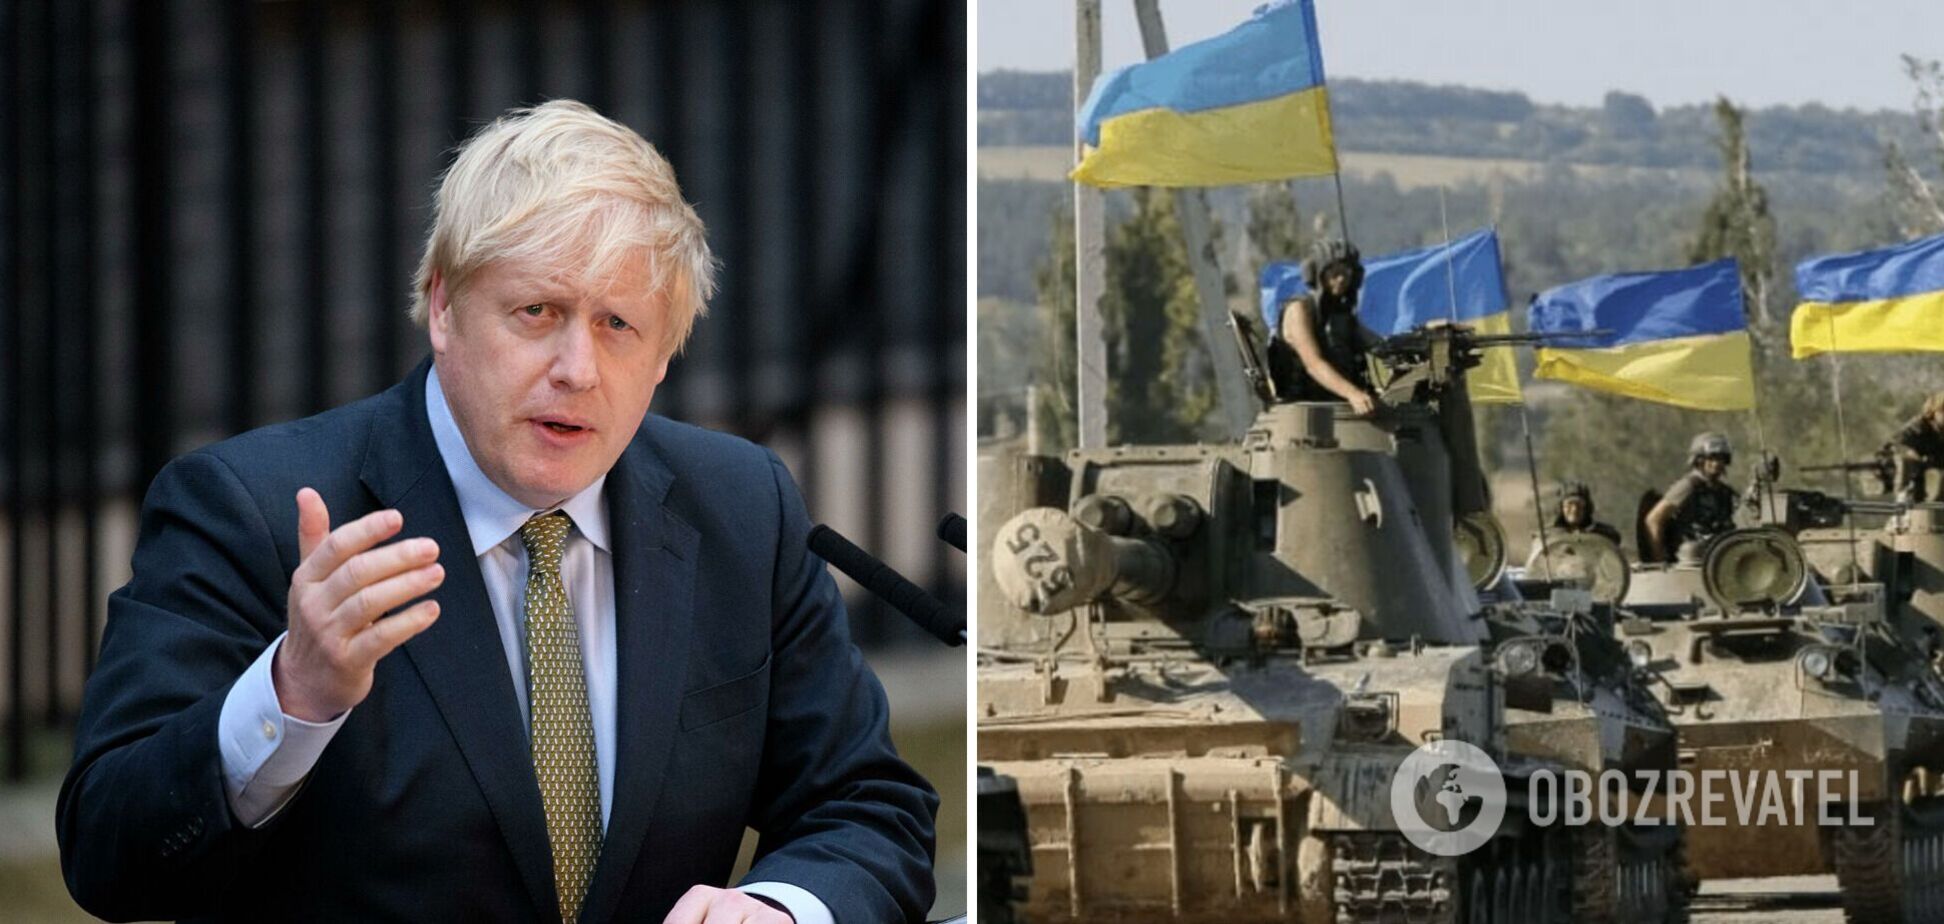 'Я уверен, что украинцы победят': Борис Джонсон произнес речь в поддержку ВСУ. Видео